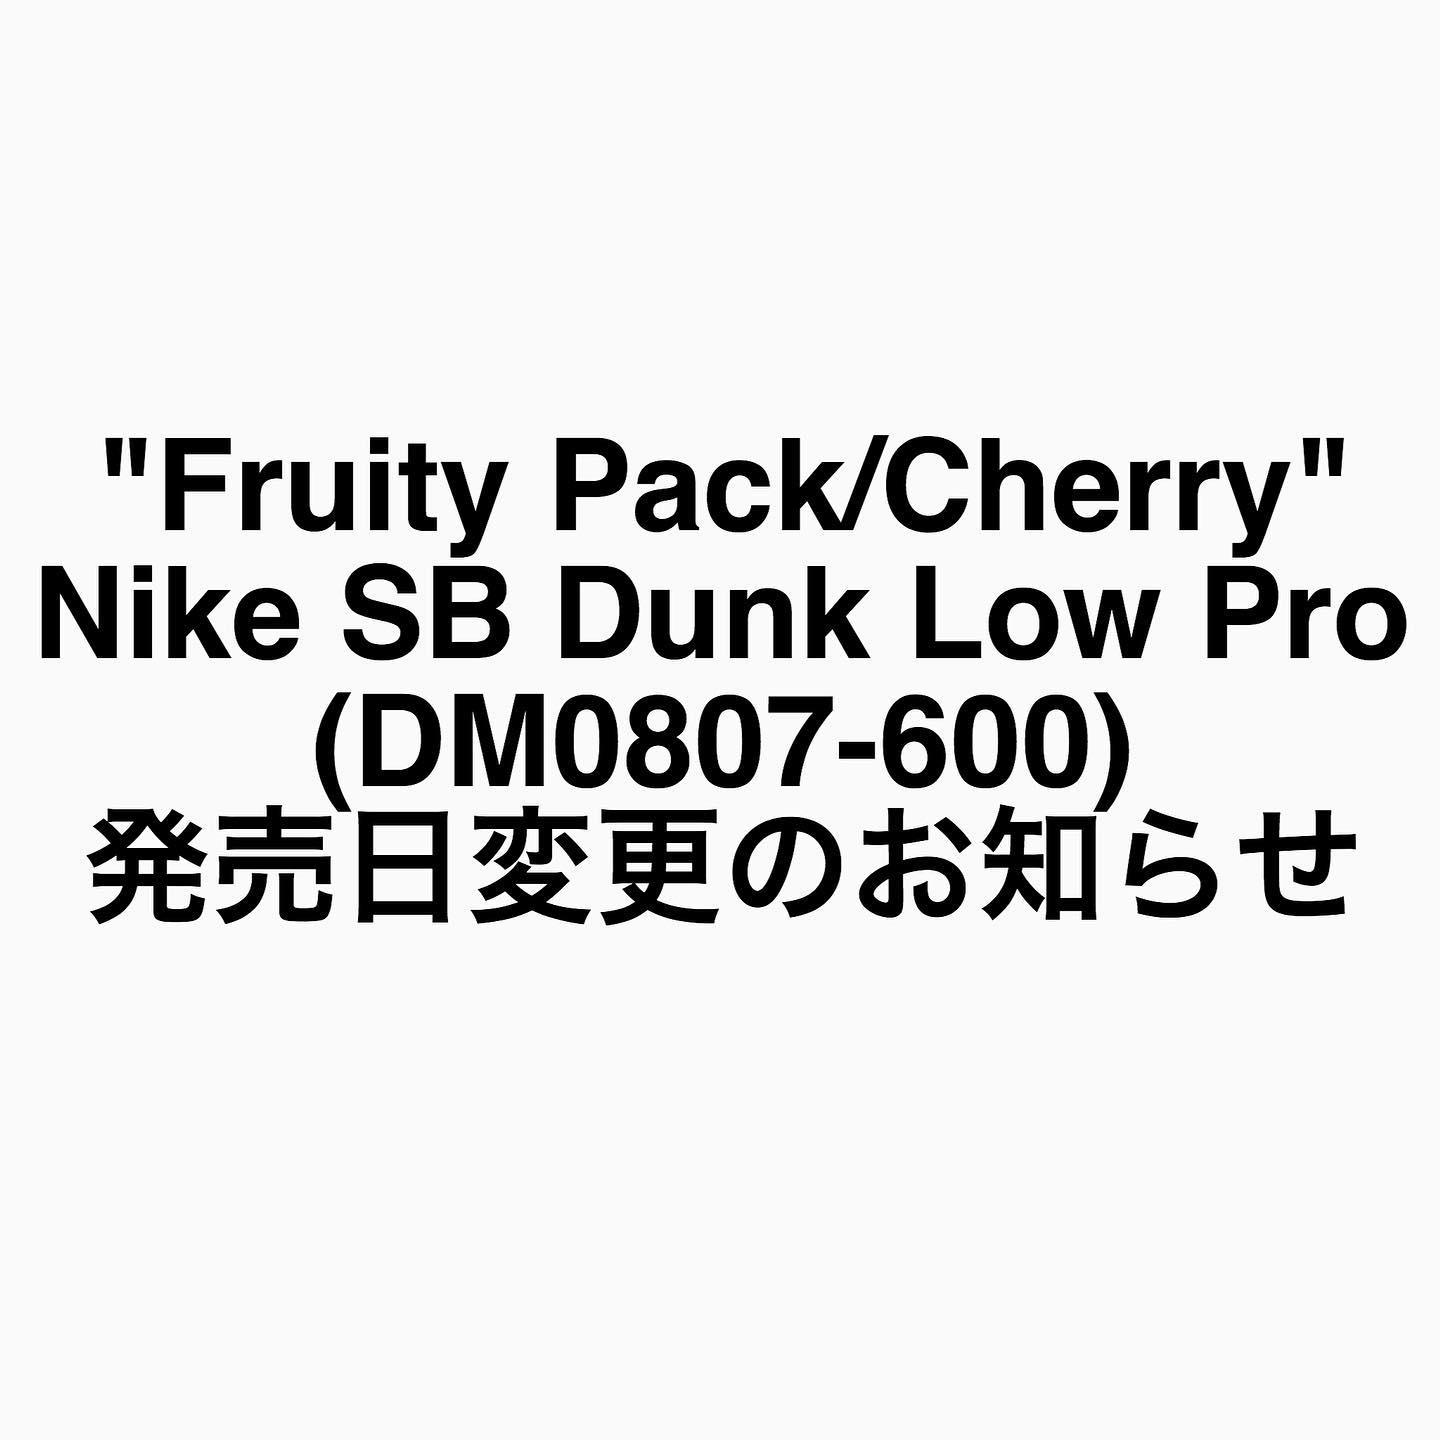 【発売日変更のお知らせ】"Fruity Pack/Cherry"Nike SB Dunk Low Pro (DM0807-600)本日から抽選受付をさせて頂いております【"Fruity Pack/Cherry"Nike SB Dunk Low Pro /DM0807-600】の発売日が変更となりました。変更後の発売日につきましては確定後、再度当INSTAGRAMアカウントとブログにて告知させていただきます。発売日変更に伴い、抽選受付・ご当選発表・お引取り期間・ご発送の日程も変更となります。こちらにつきましても改めてブログにて告知させていただきます。ご不便をおかけしますが、ご理解ご協力のほどよろしくお願いいたします。※既にご提出頂きました抽選応募につきましては、そのままお受付させていただきます。